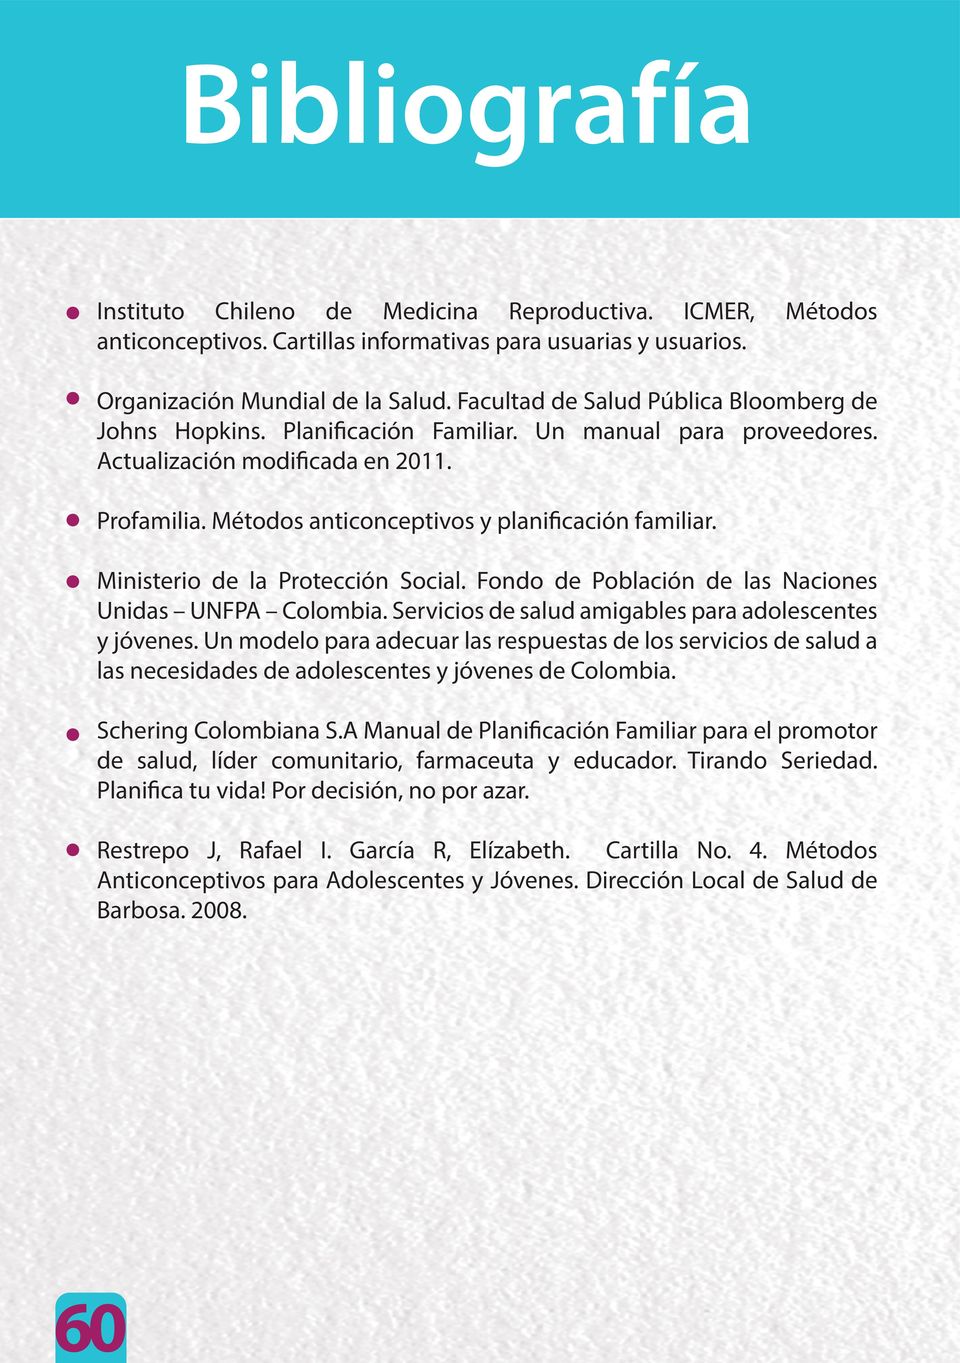 Métodos anticonceptivos y planificación familiar. Ministerio de la Protección Social. Fondo de Población de las Naciones Unidas UNFPA Colombia.